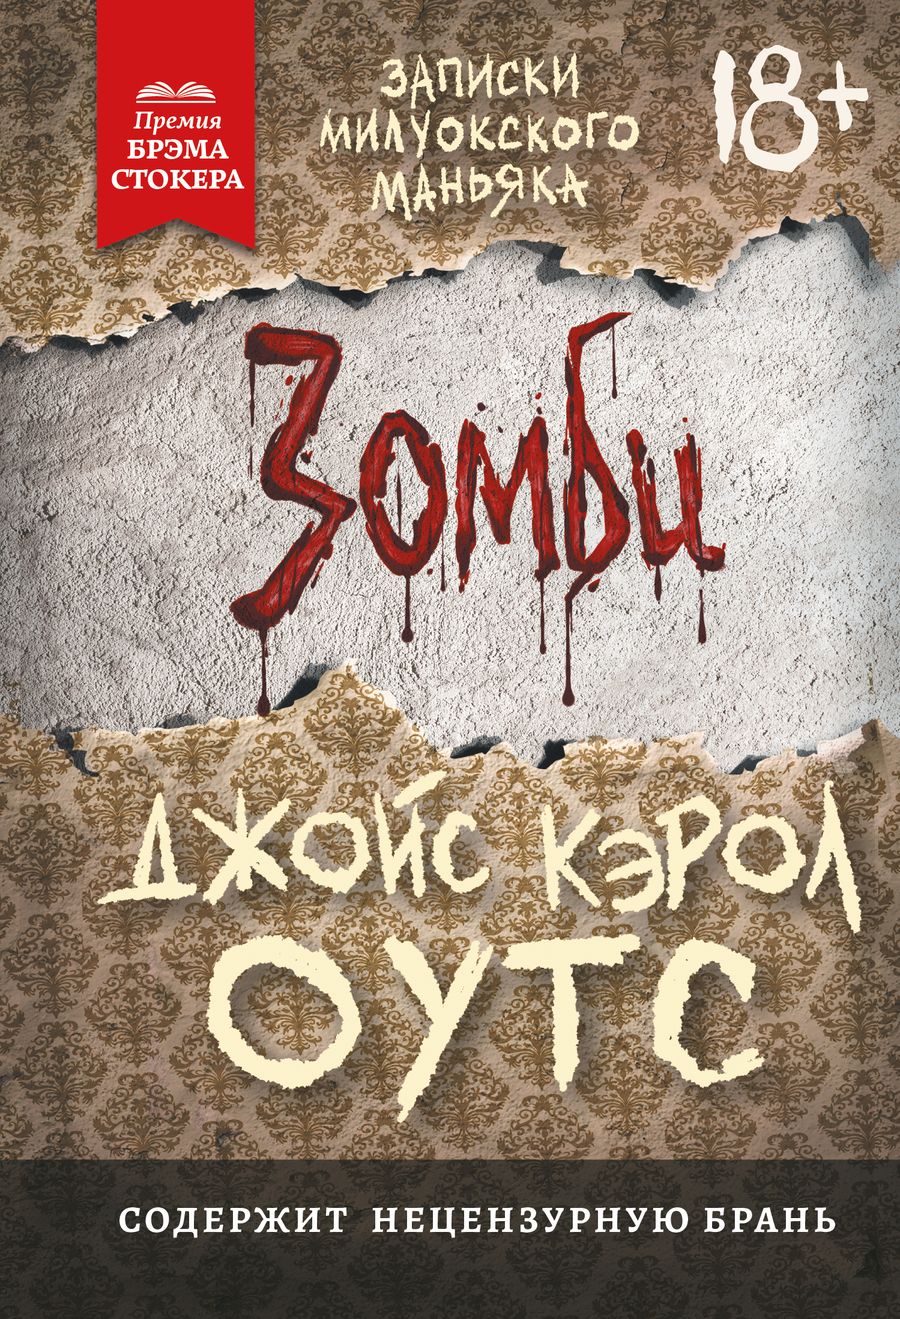 Обложка книги "Джойс Оутс: Зомби: записки милуокского маньяка"